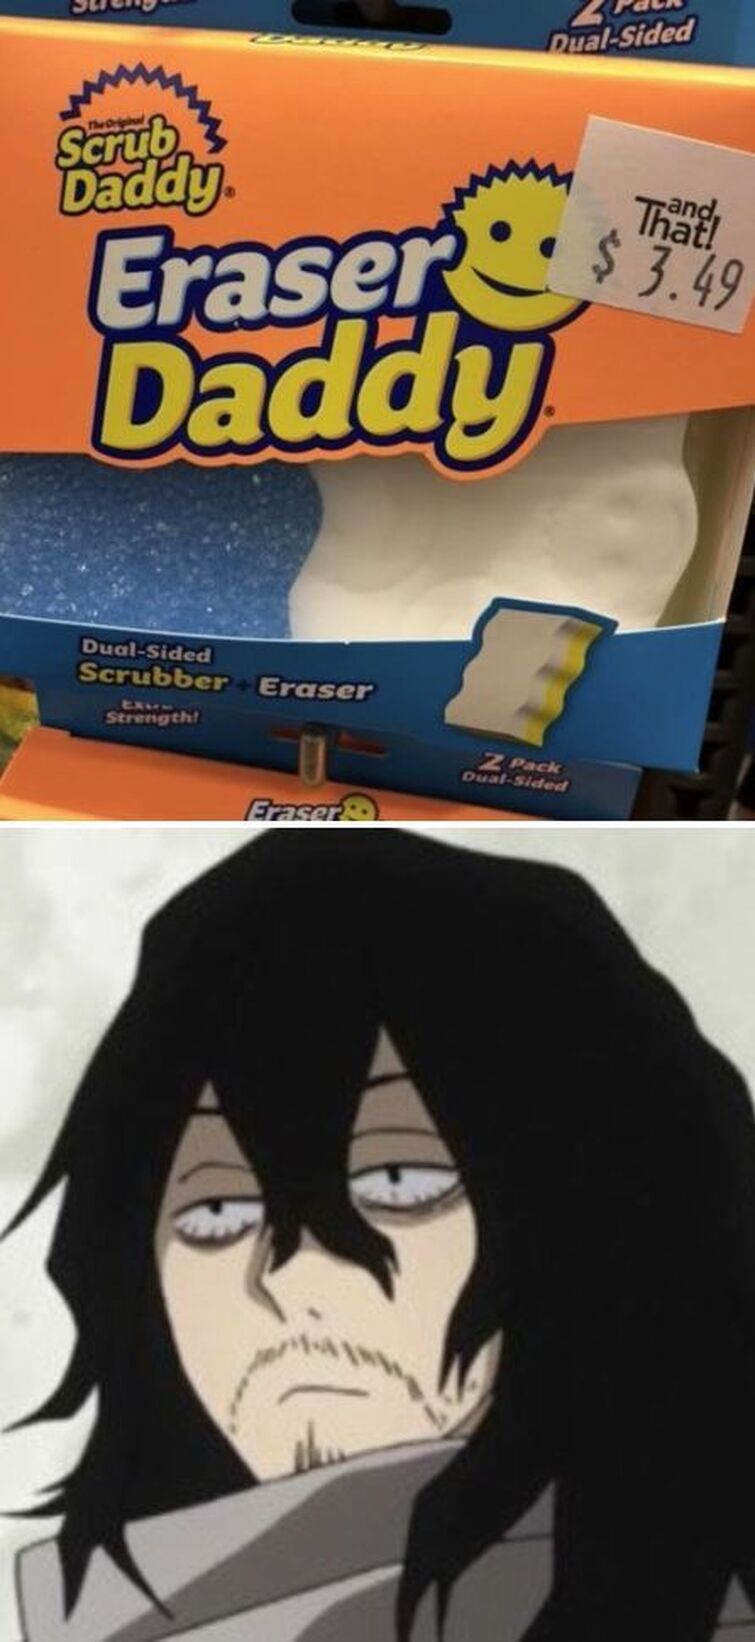 Eraser daddy